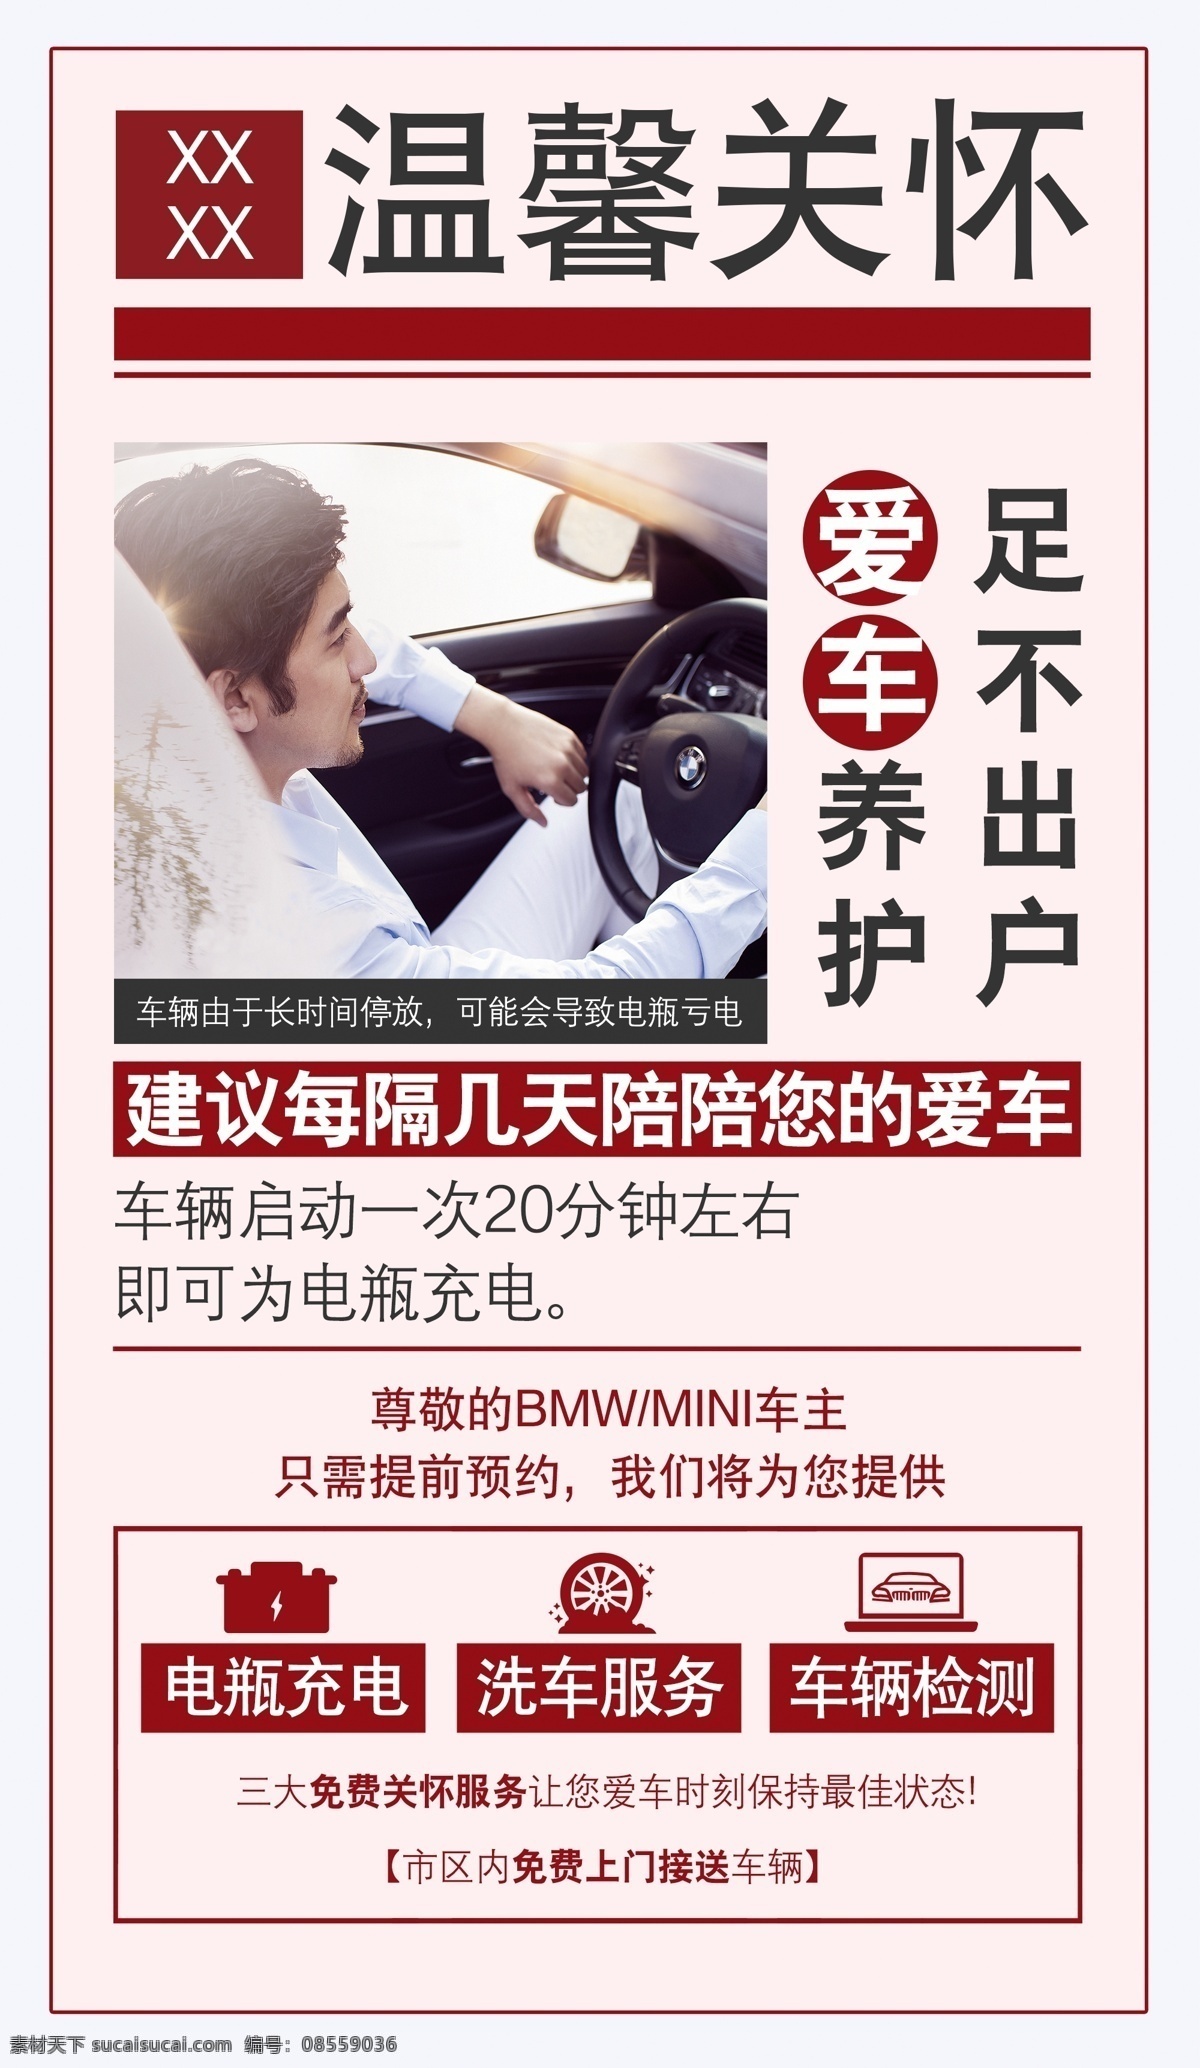 宝马温馨提示 bmw 宝马 宣传 海报 温馨 提示 亏点 提醒 上门 服务 分层